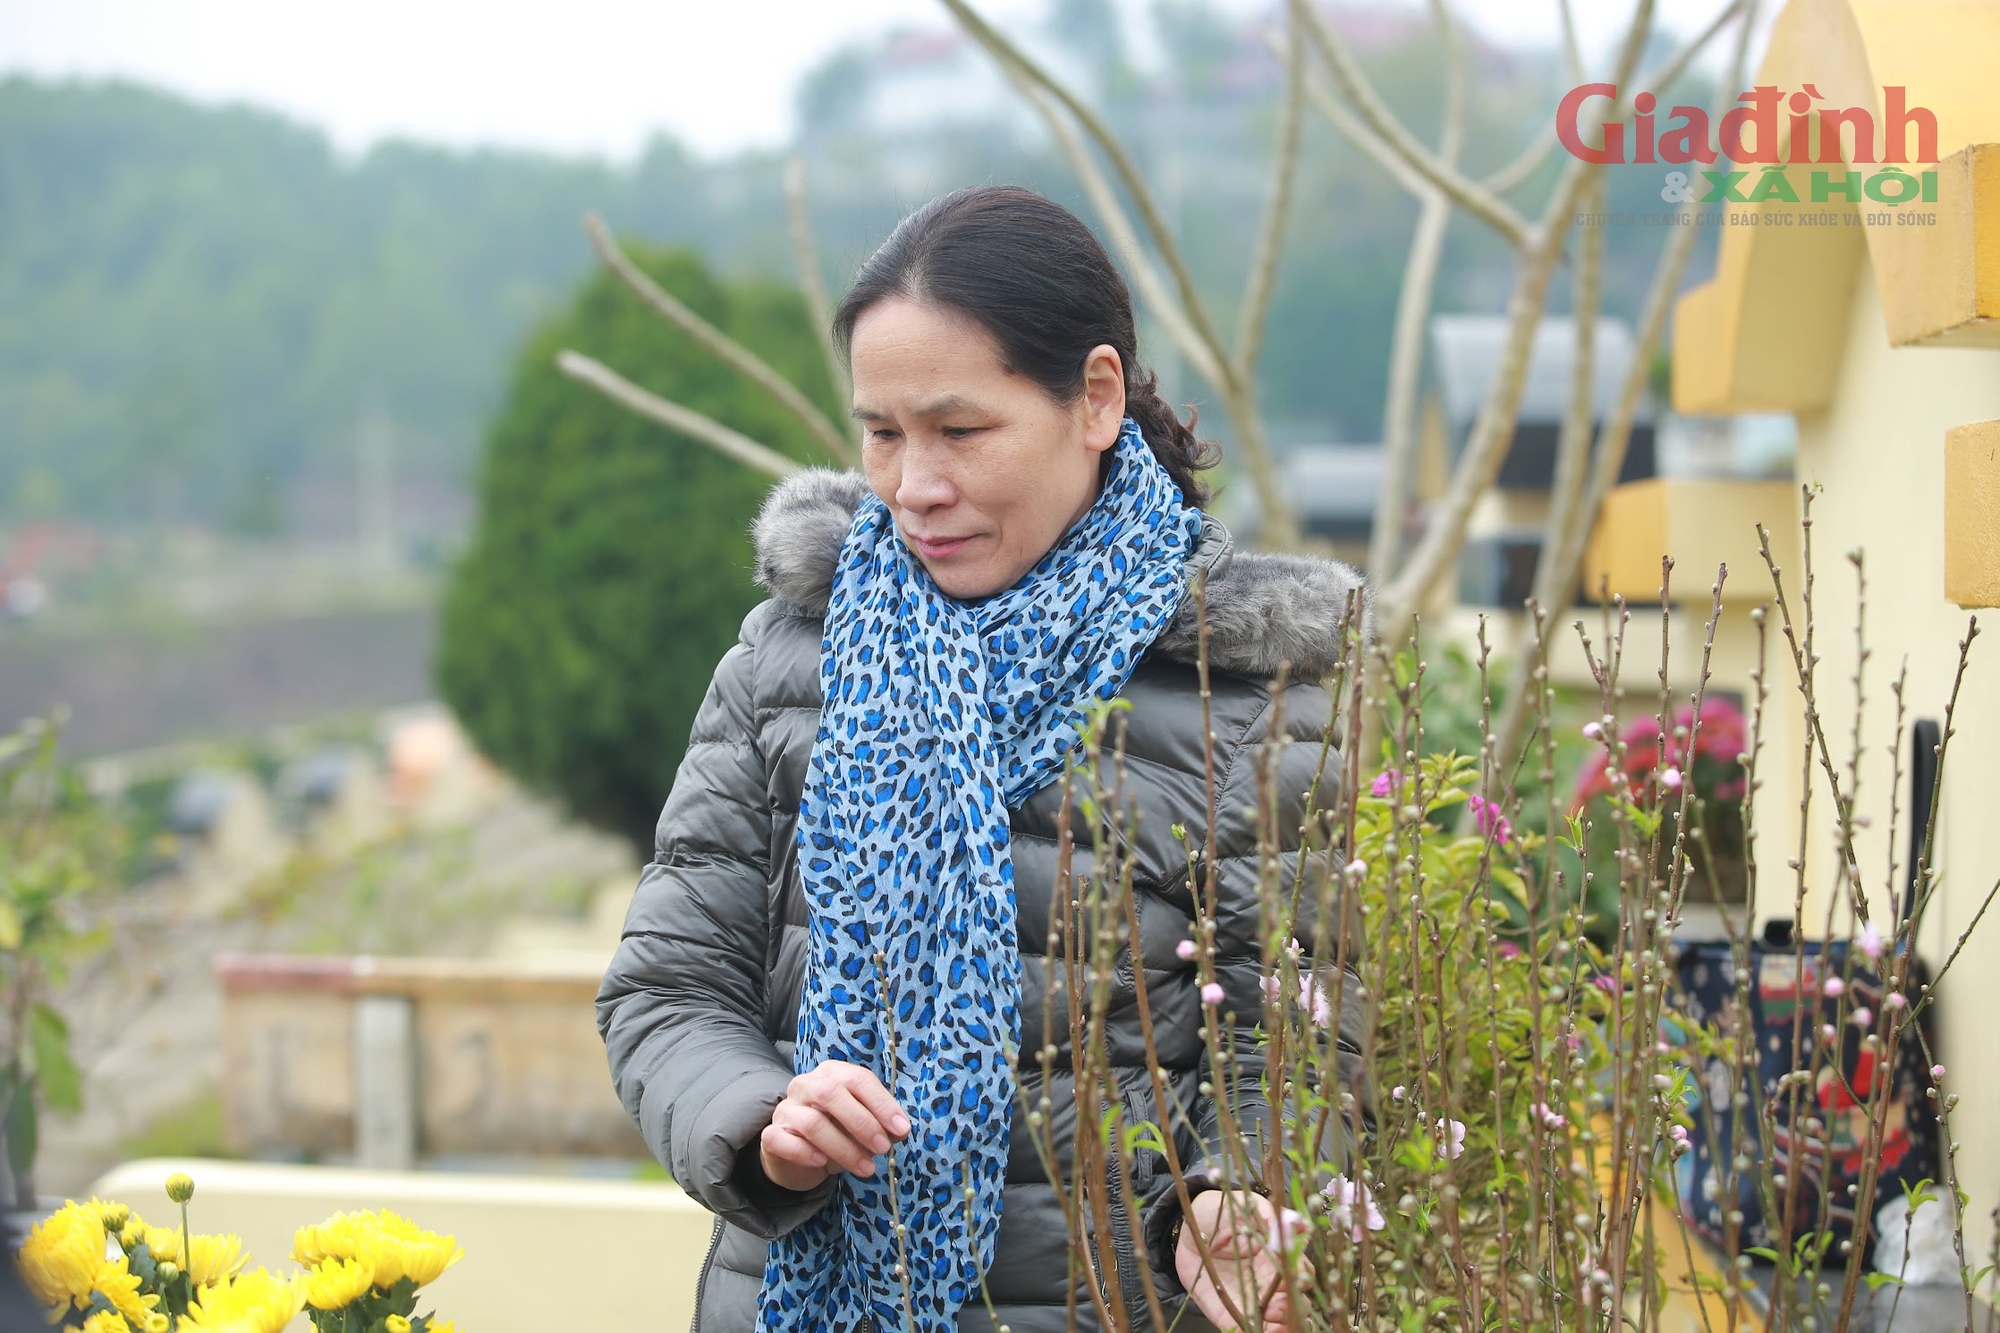 Chạm giao thừa, người phụ nữ ở Hà Nội vượt gần 100 km lên nghĩa trang 'gửi' nhật ký cho chồng - Ảnh 5.